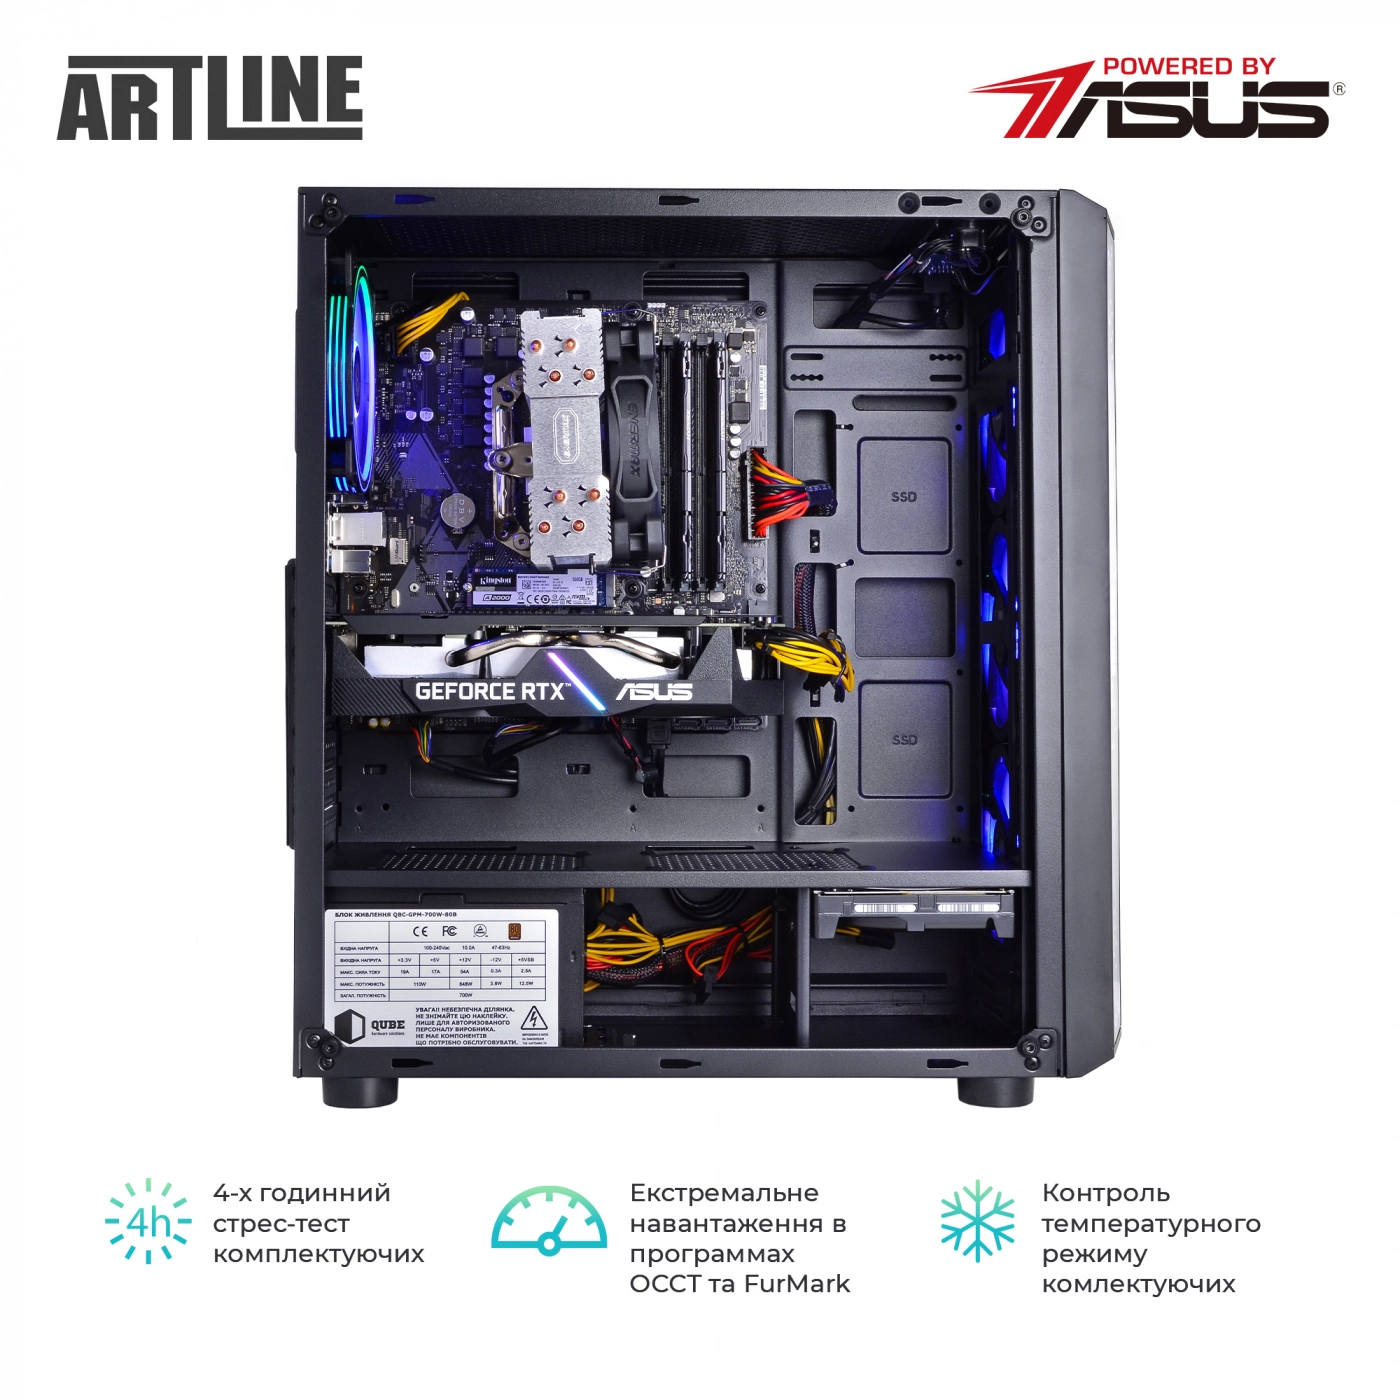 Купить Компьютер ARTLINE Gaming X75v22 - фото 8